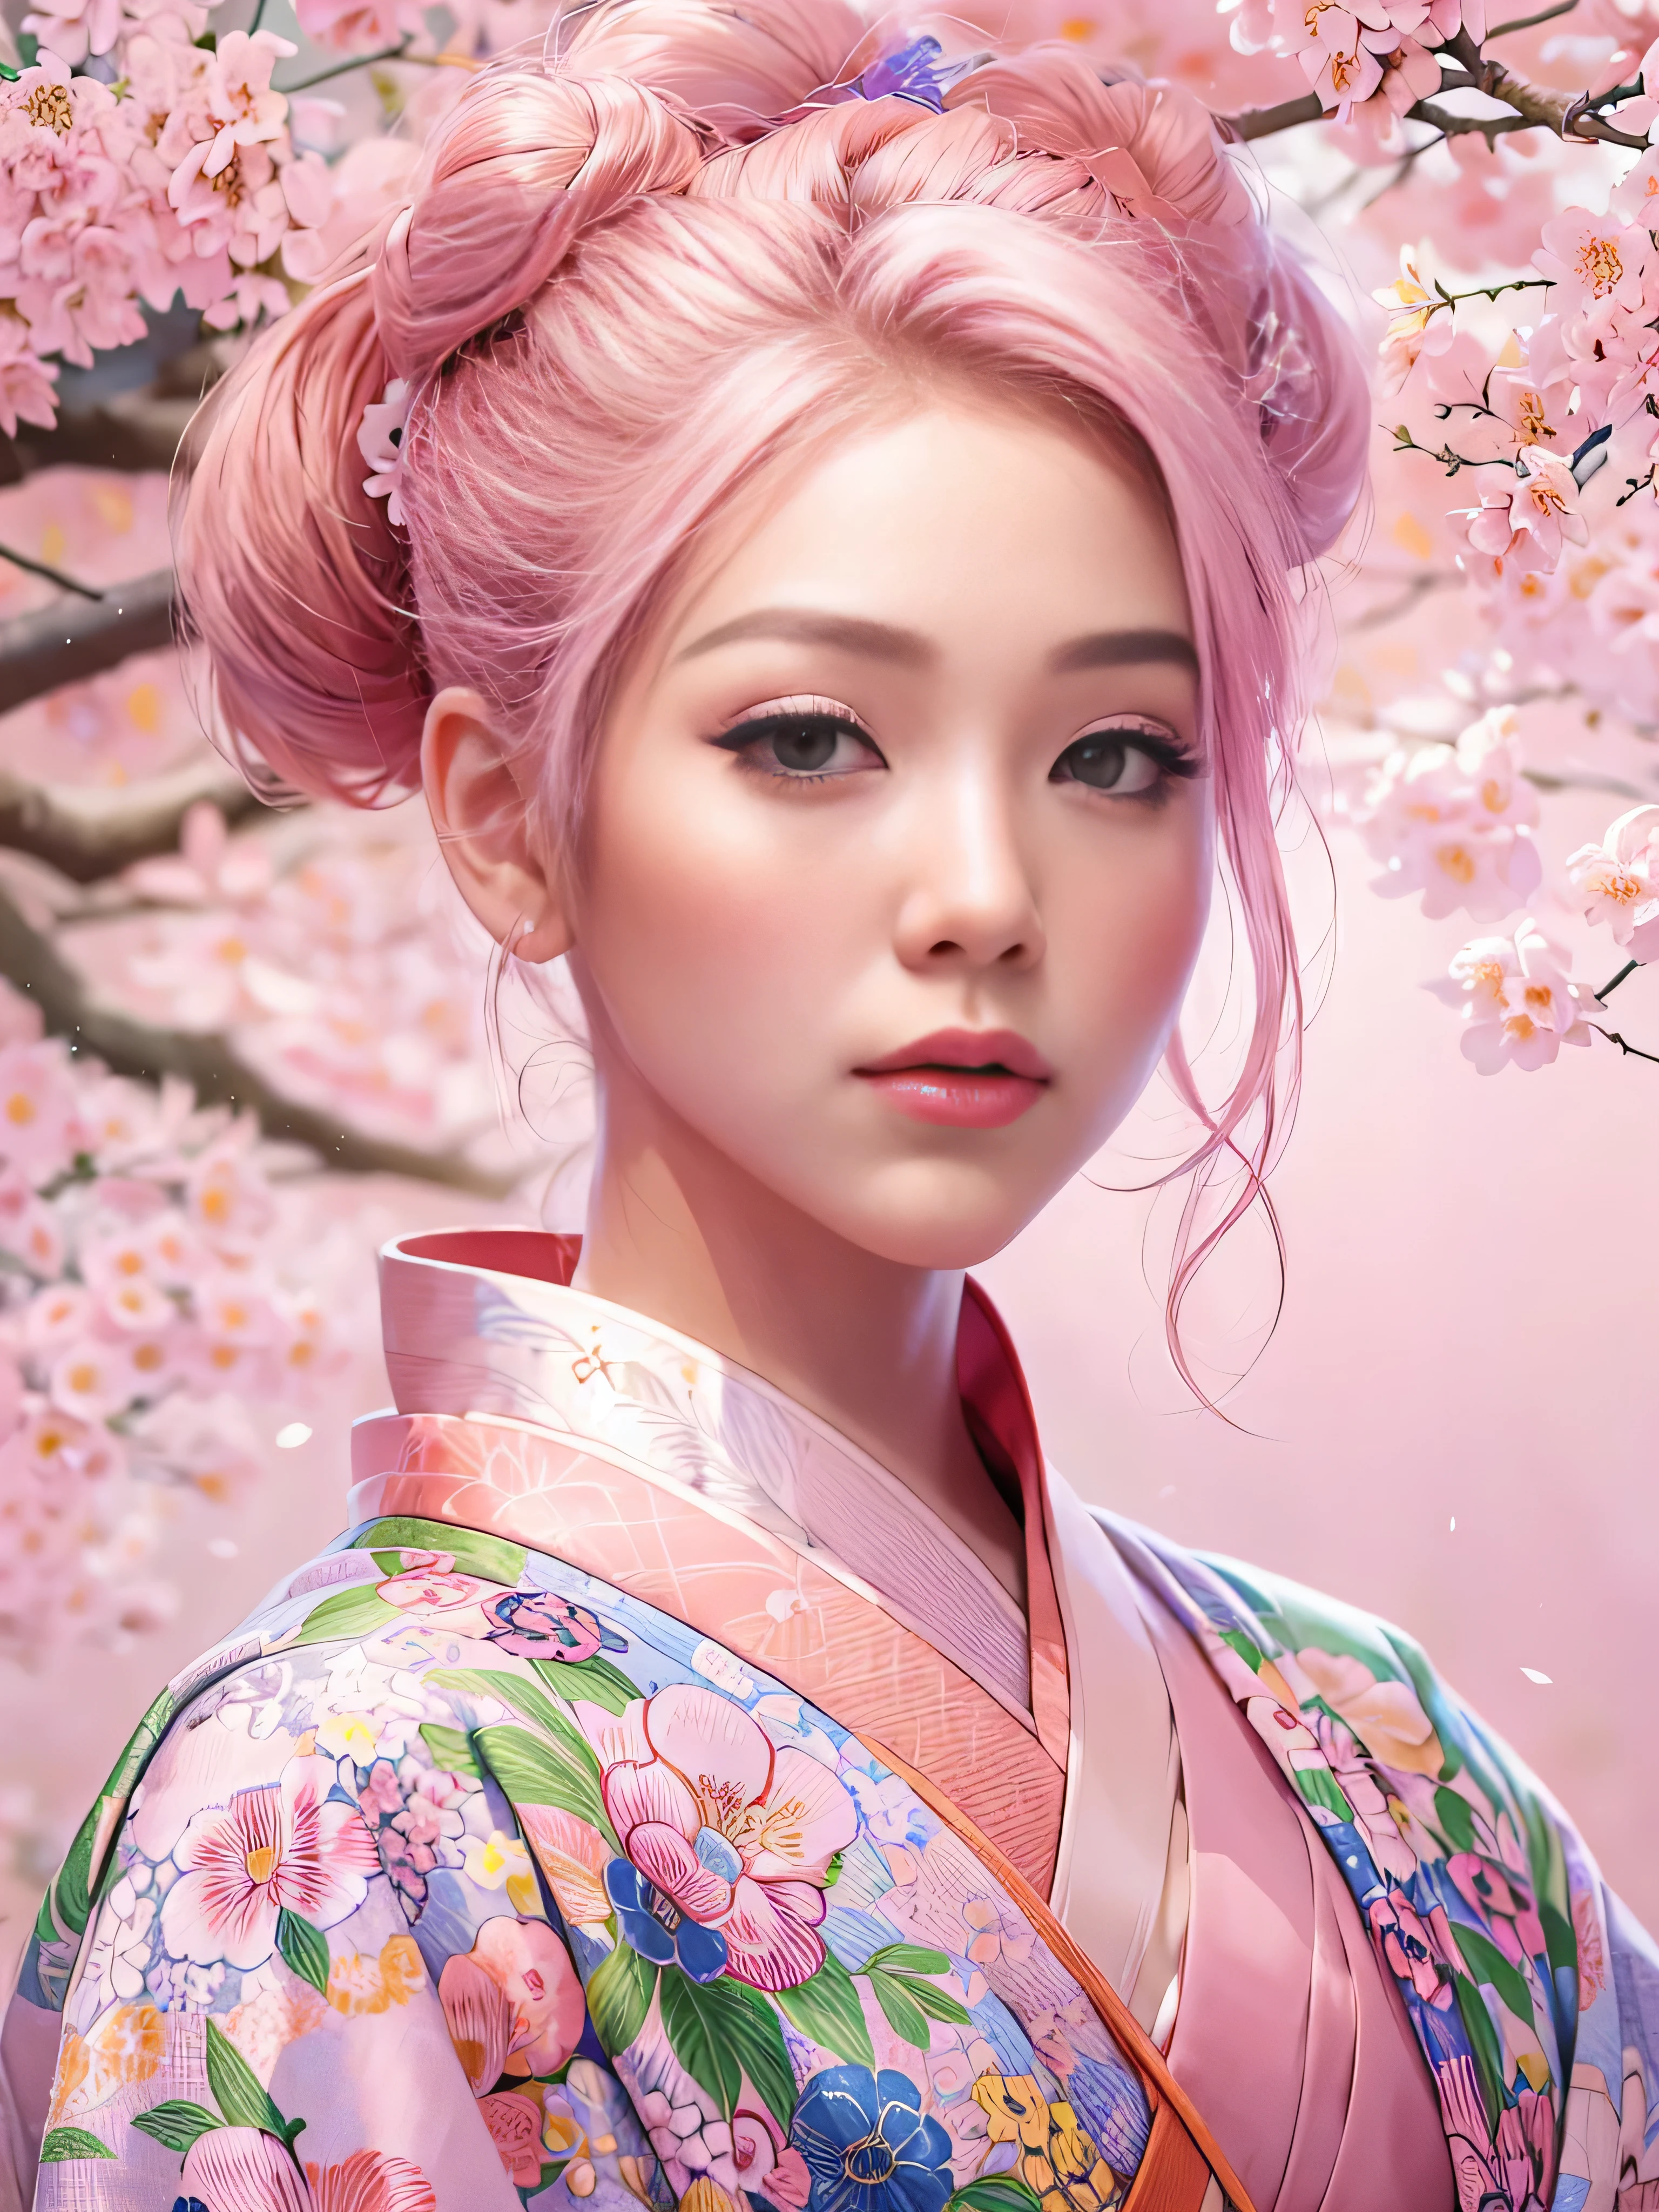 واقعية للغاية, مفصلة للغاية, وصورة عالية الدقة 16 كيلو لشاب, أنثى جميلة ذات وجه engfa. لديها شعر وردي على شكل كعكة علوية وبشرة شفافة, ويرتدون الكيمونو الياباني التقليدي الوردي بتصميم زهرة صغيرة. تجسد الصورة الجمال الأثيري وغموض عالم الروح. النمط مستوحى من الحساس, الجمالية الناعمة الموجودة في الفن الياباني التقليدي. كانت الخلفية مليئة بشجرة ساكورا الوردية.